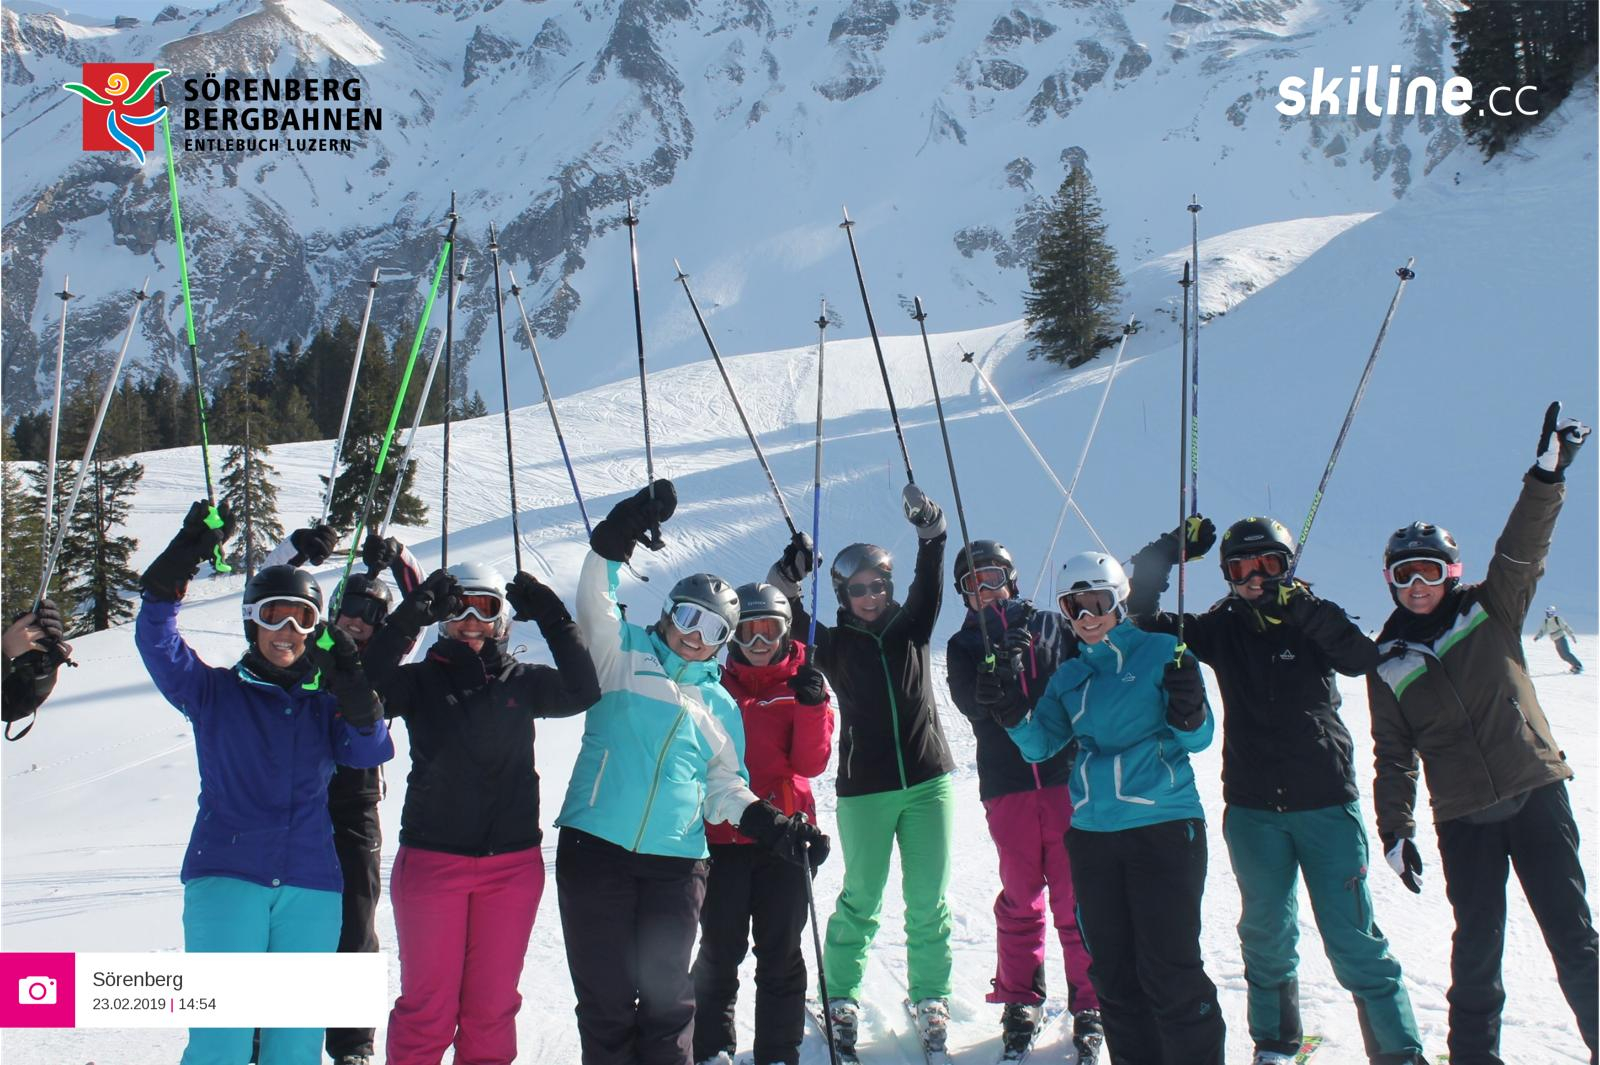 Update: Heitere Skiturnfahrt nach Sörenberg